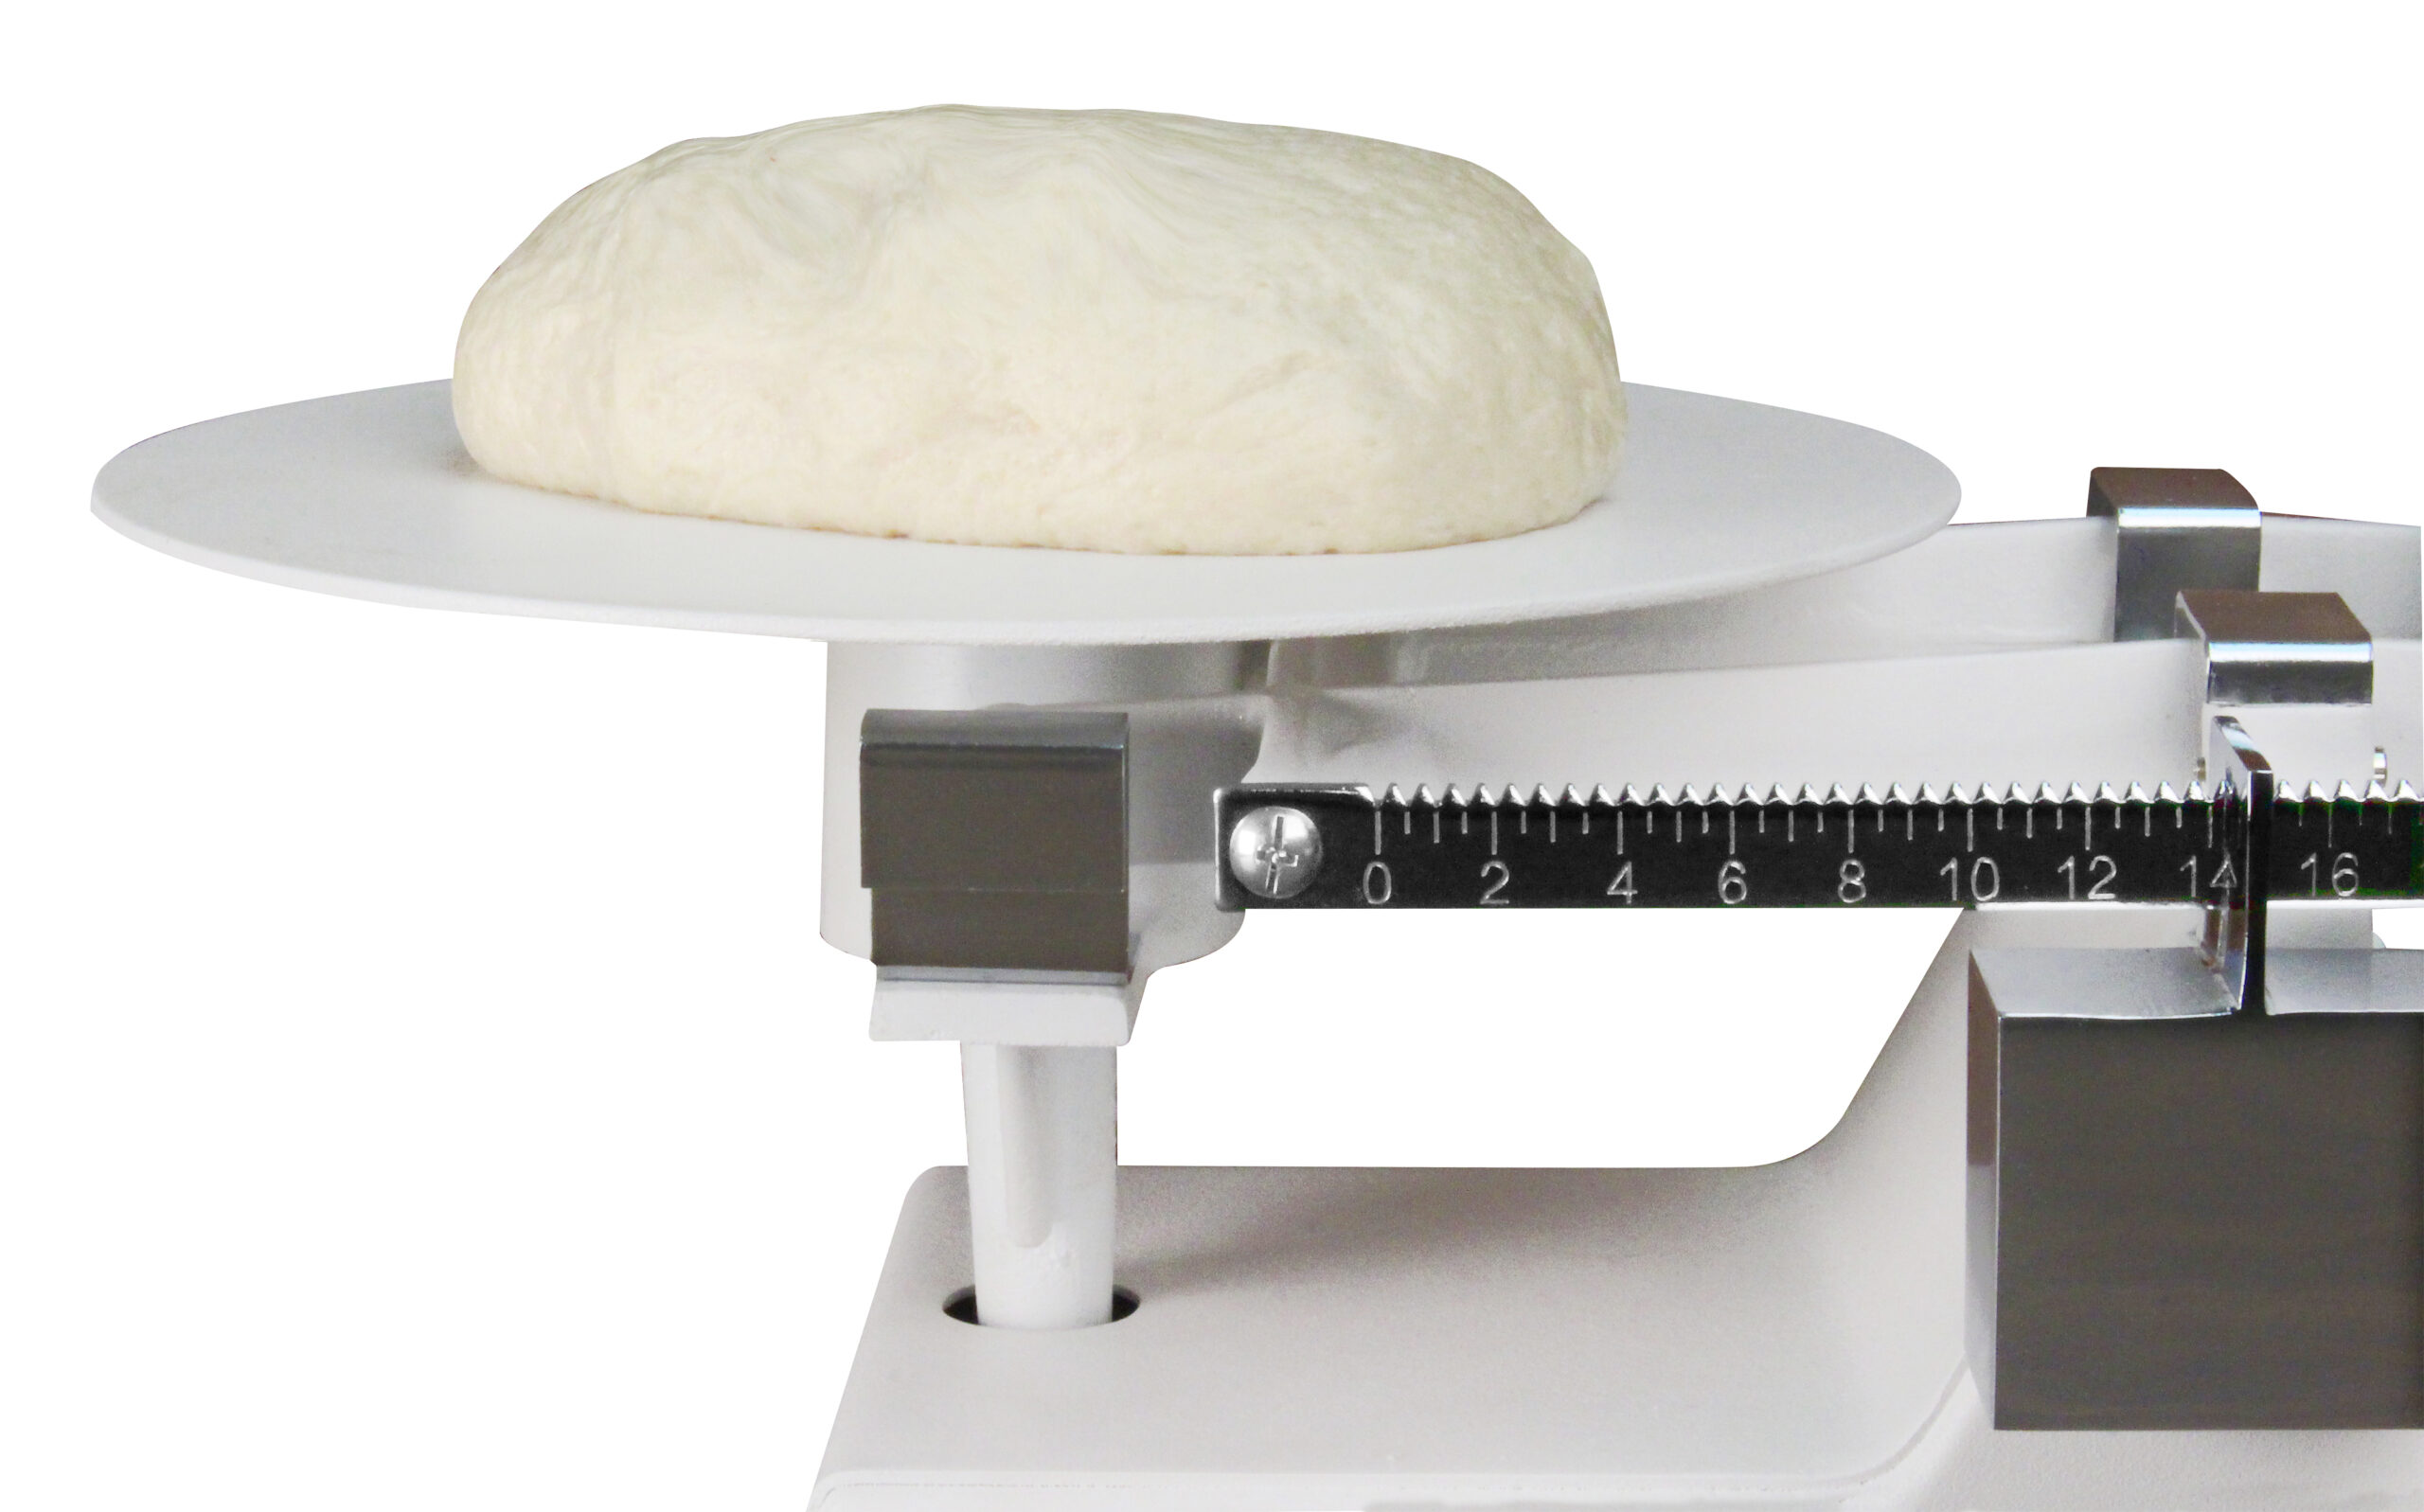 Bakers Dough Scale 16 lb X 1/4 oz